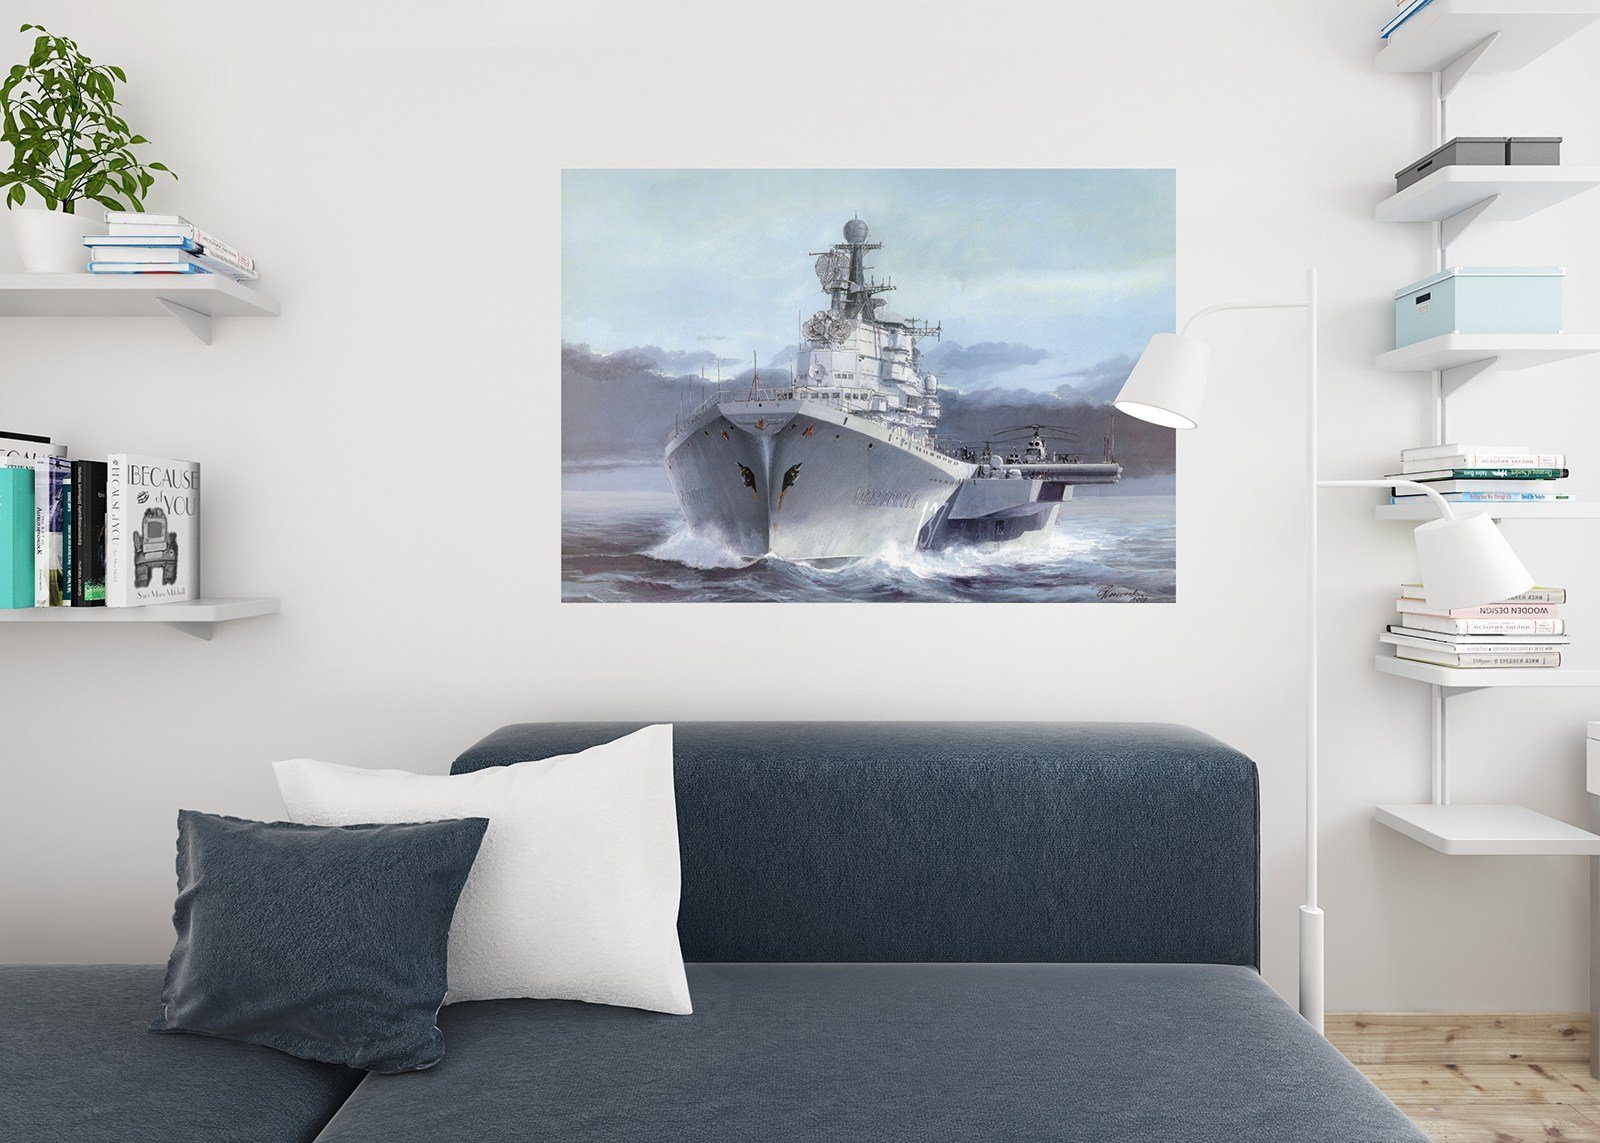 Постеры на стену москва. Картина с кораблем в интерьере. Постеры на стену. Постер на стену корабль. Постеры на стену с кораблями в интерьере гостиной.